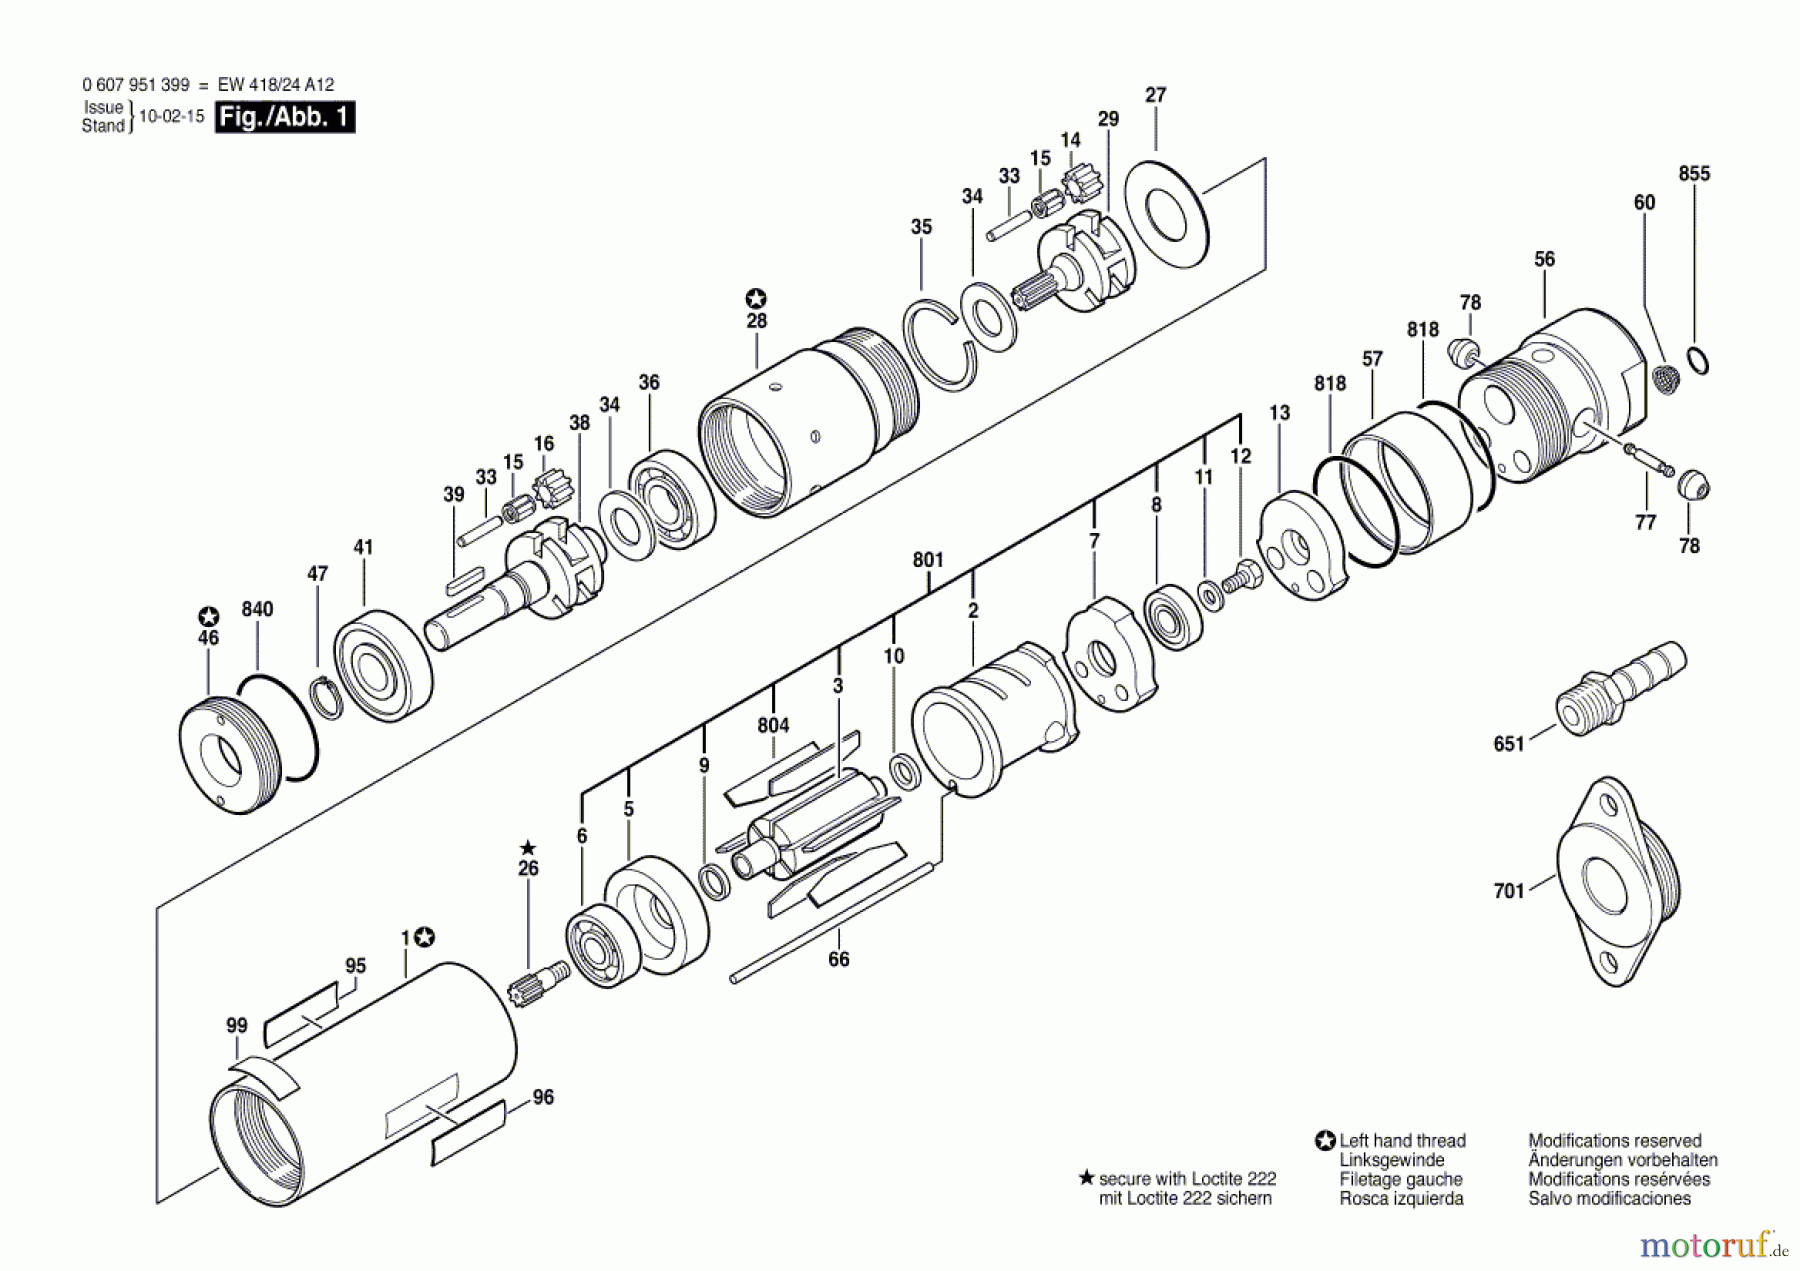  Bosch Werkzeug Druckluftmotor 370 WATT-SERIE Seite 1